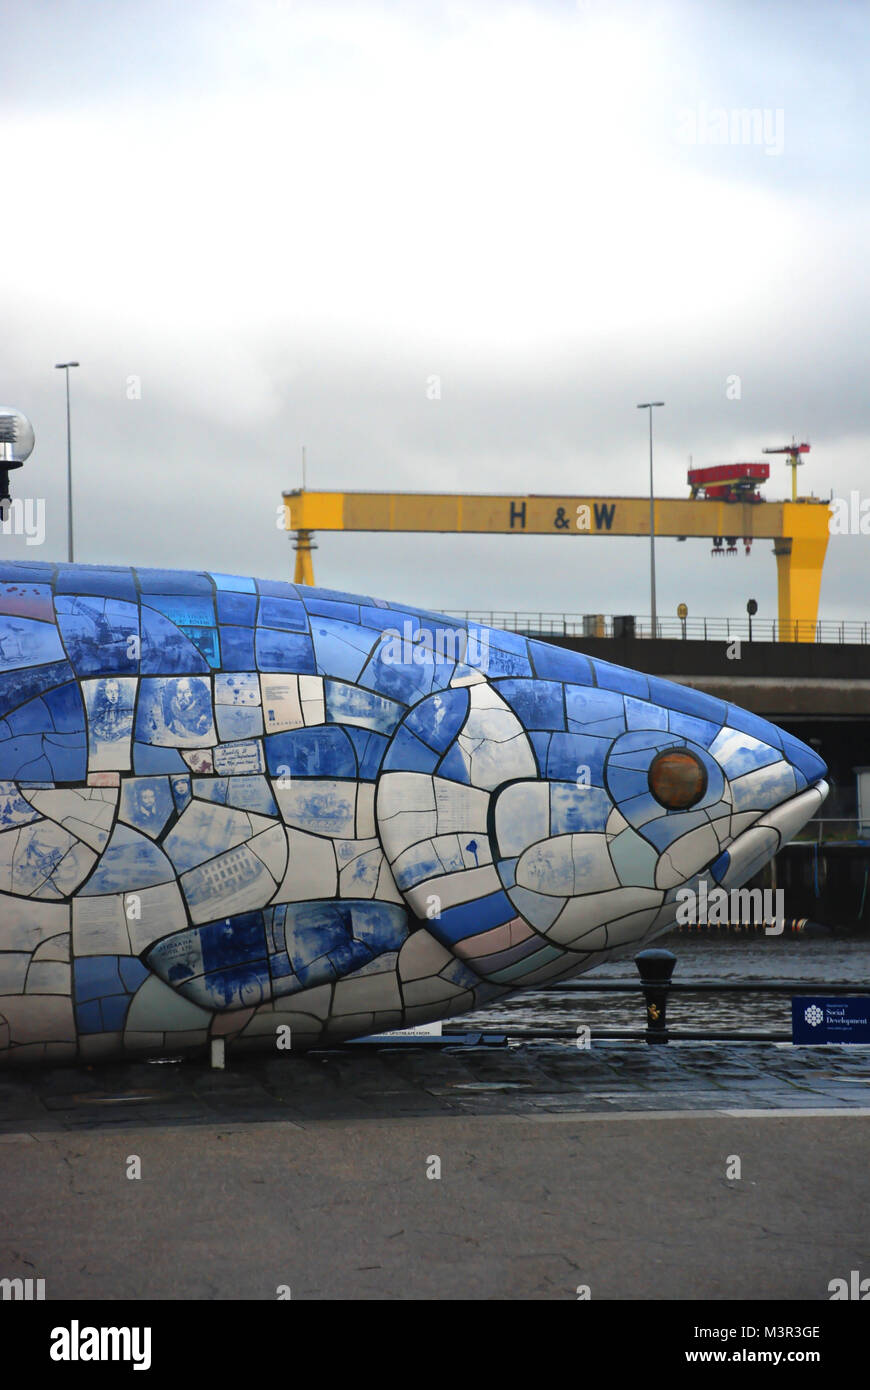 La grande statua di pesce e h&w gru in background, Belfast, Irlanda del Nord, Regno Unito Foto Stock